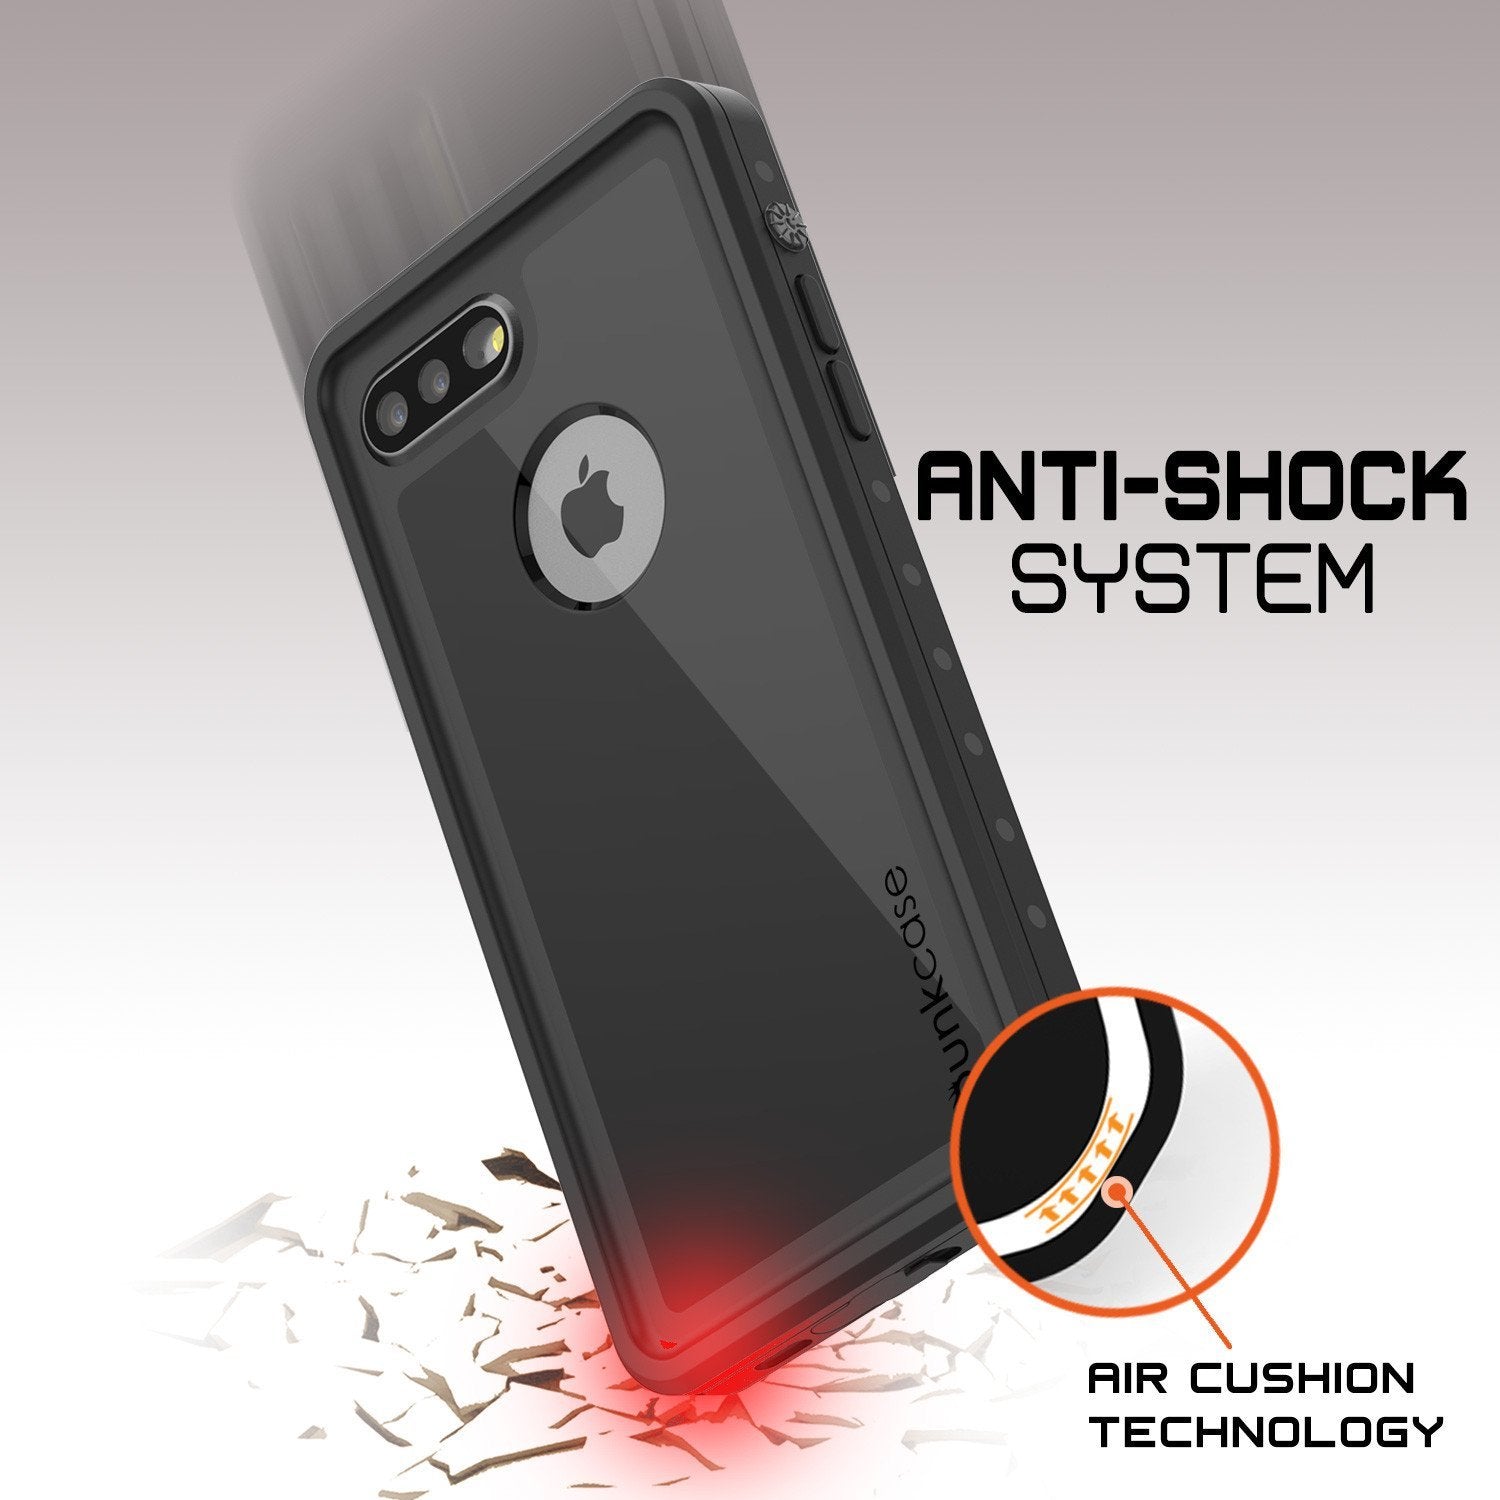 iPhone 8 Plus Waterproof IP68 Case, Punkcase [Black] [StudStar Series] [Slim Fit] [Dirtproof] - PunkCase NZ